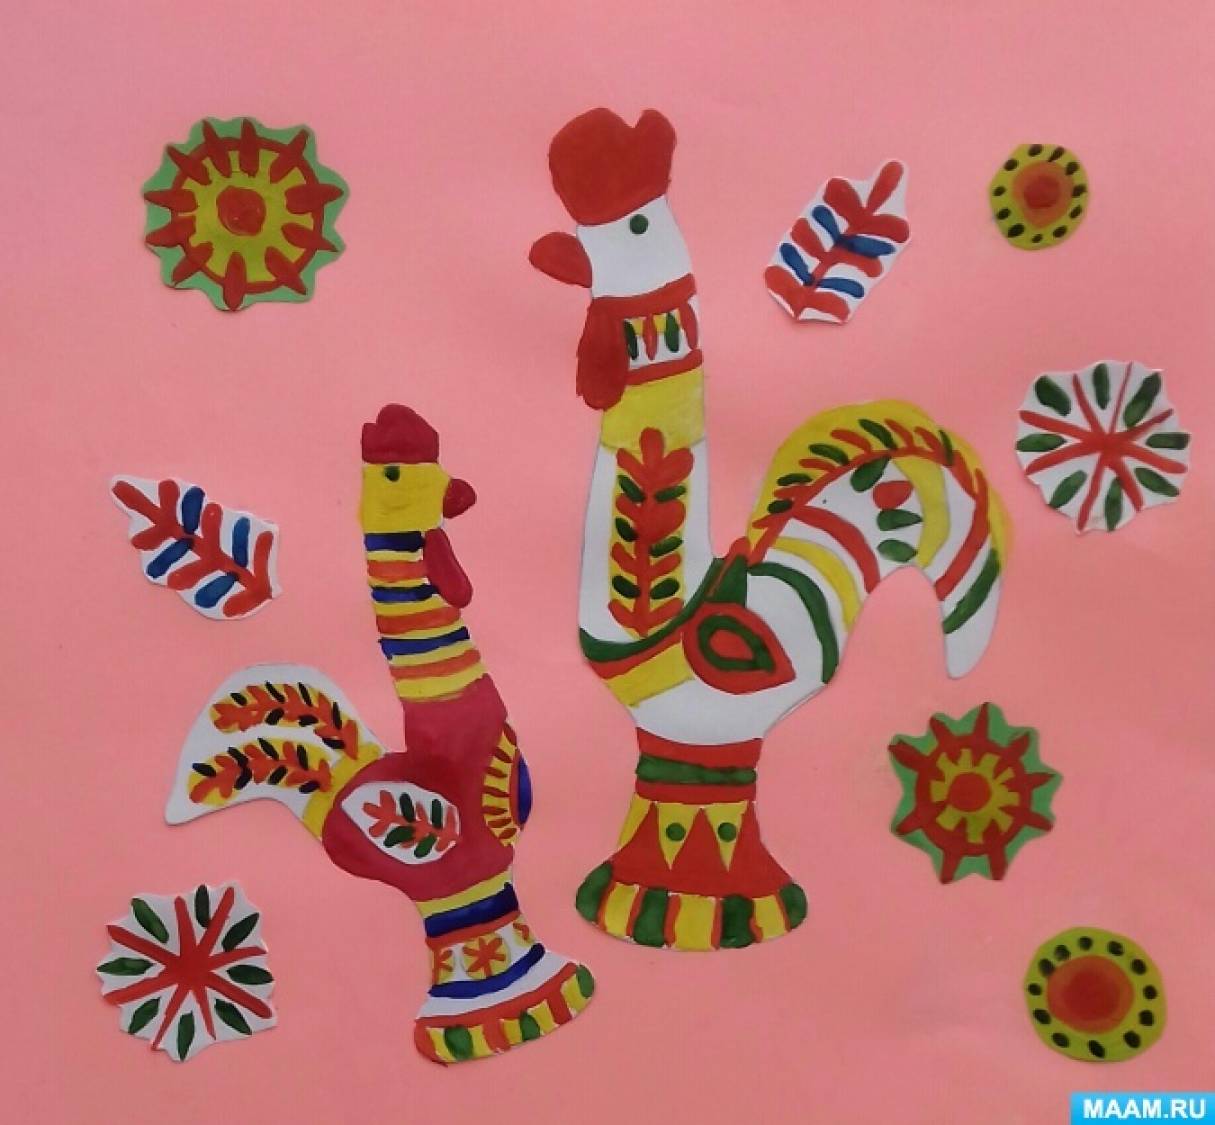 Мастер-класс по рисованию гуашевыми красками «Филимоновские петушки» ко Дню филимоновской игрушки на МAAM